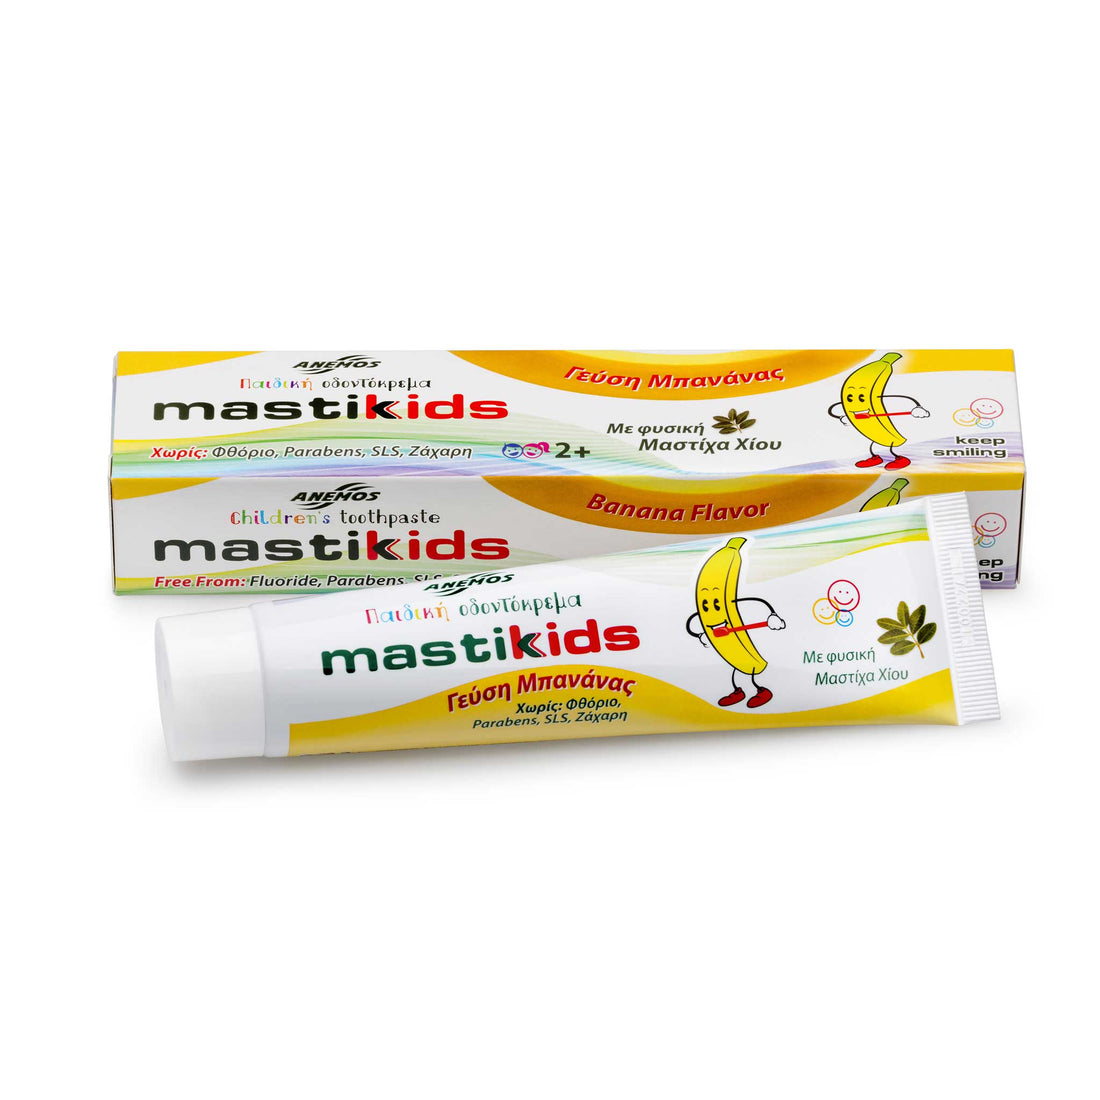 Mastickids: Mastic&Kids - pasty do zębów z mastyksem dla dzieci